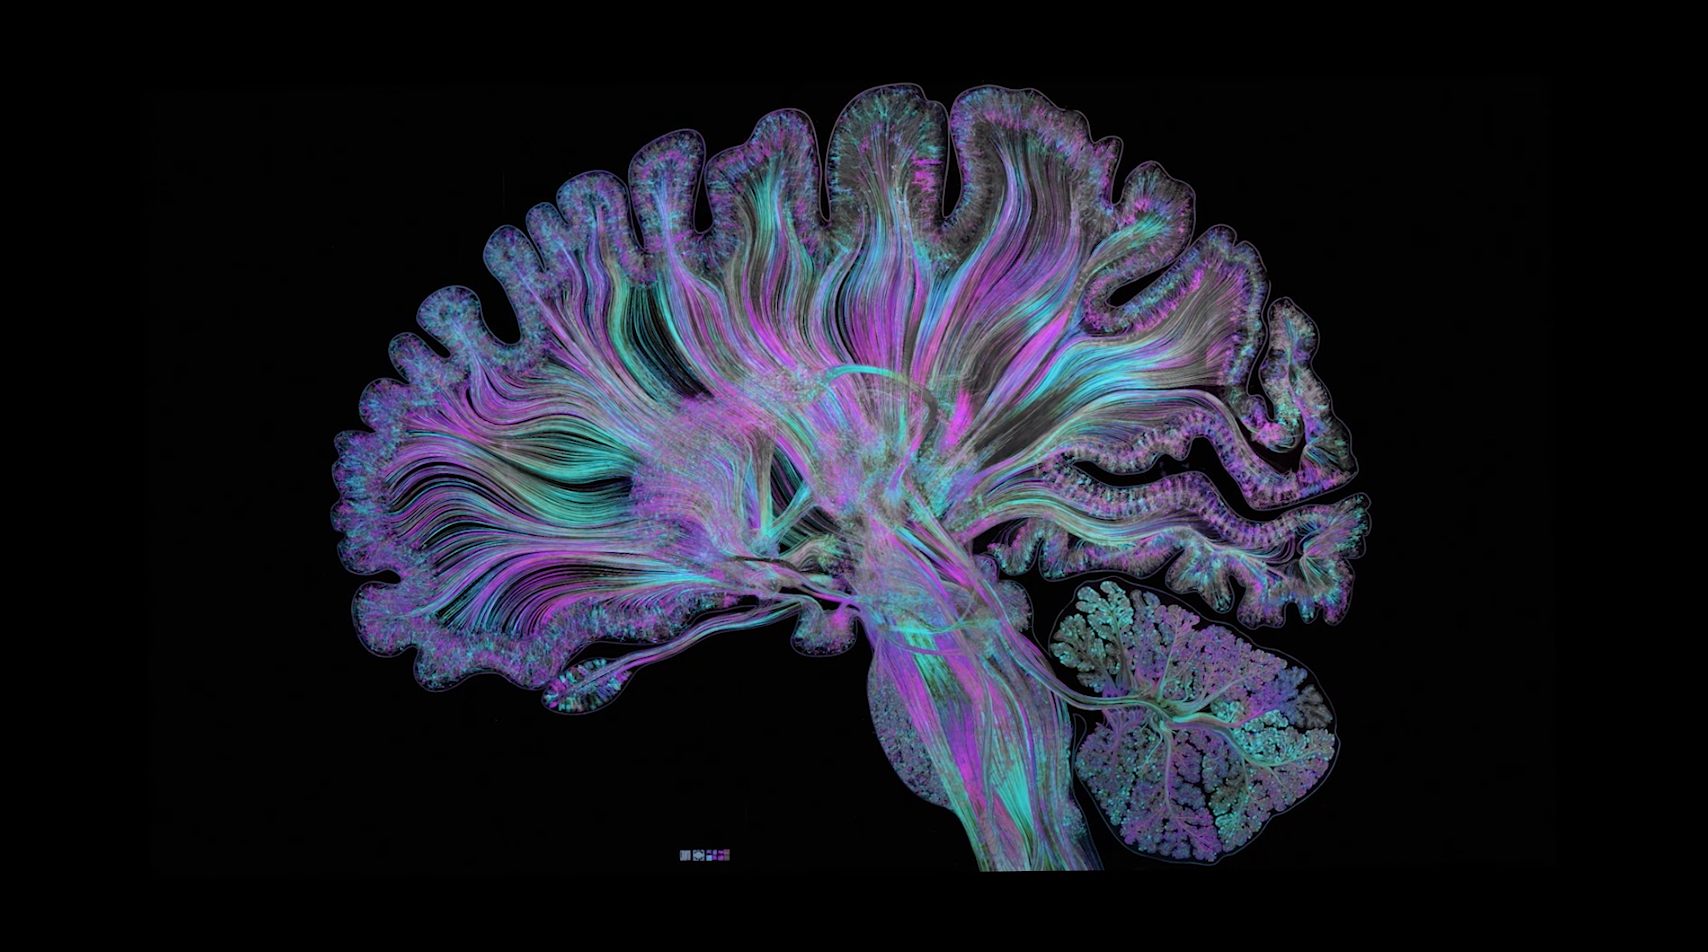 Colored representation of a brain